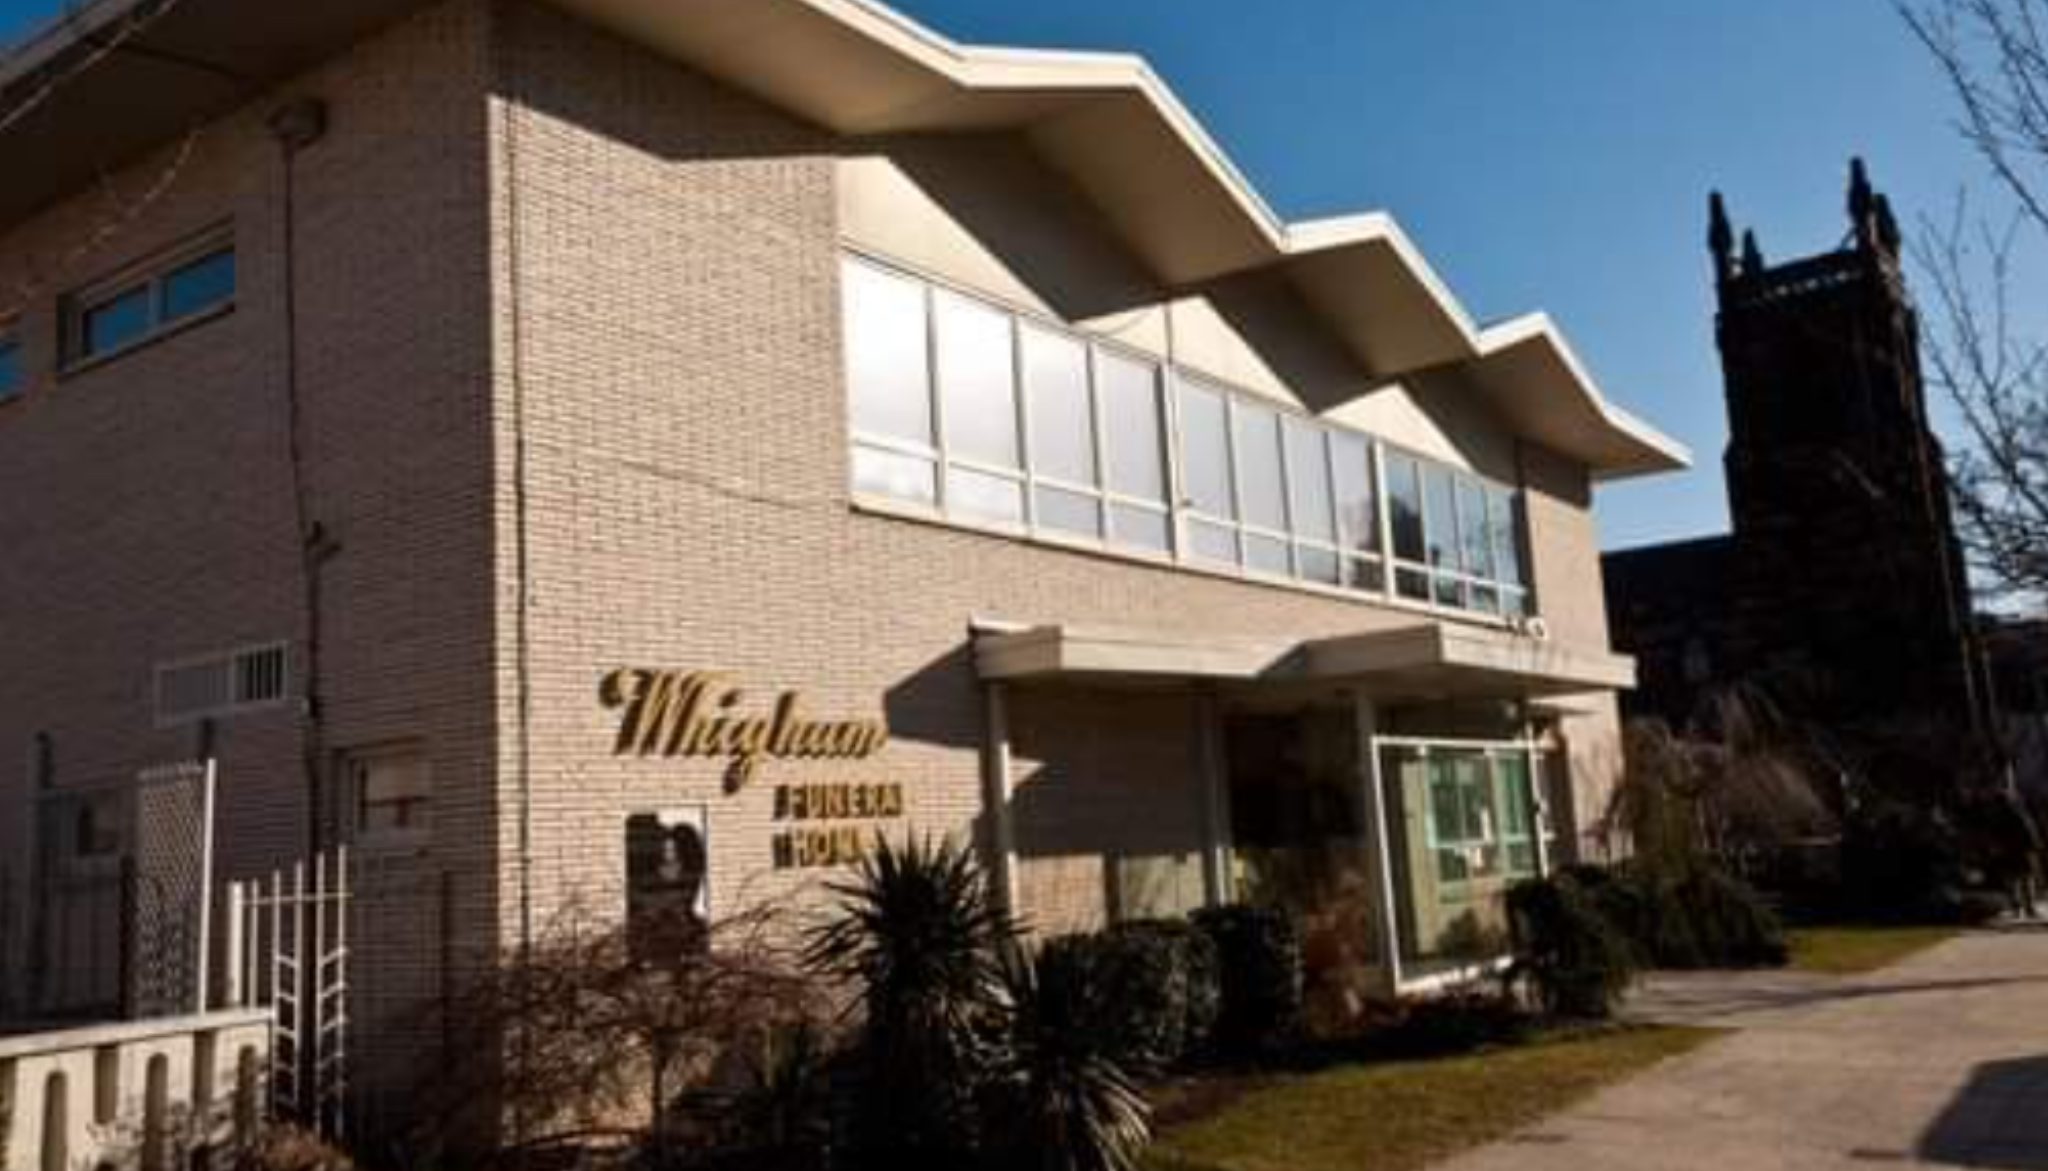 Whigham Funeral Home Denies Taking Whitney Houston Photo